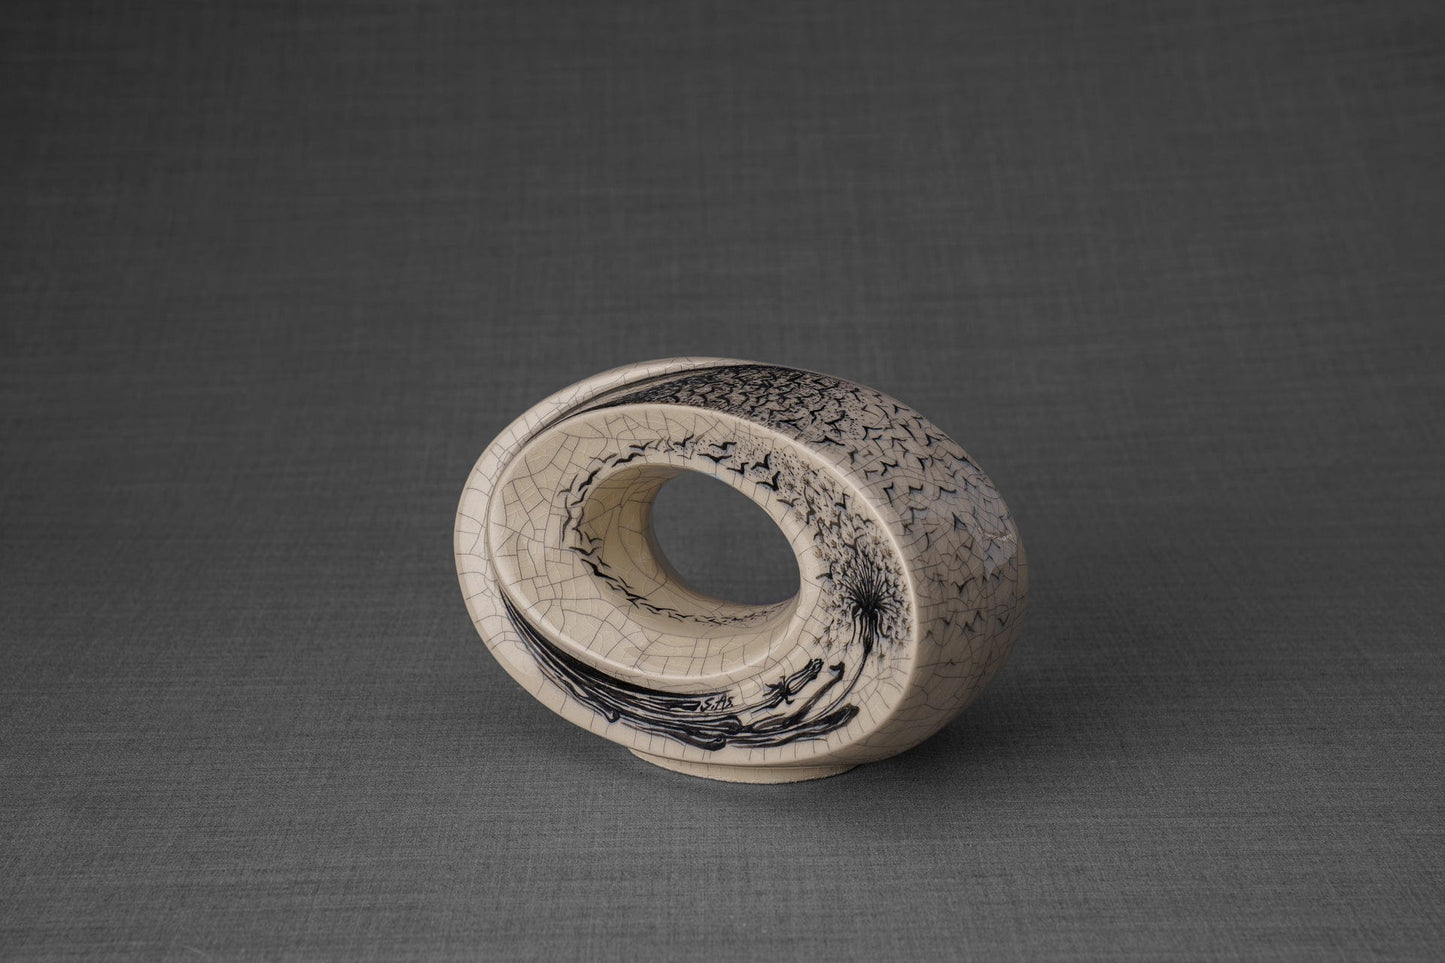 Pulvis Art Urns Exclusive Urn Hand Decorated Keepsake "The Passage - Birds" - Ceramic